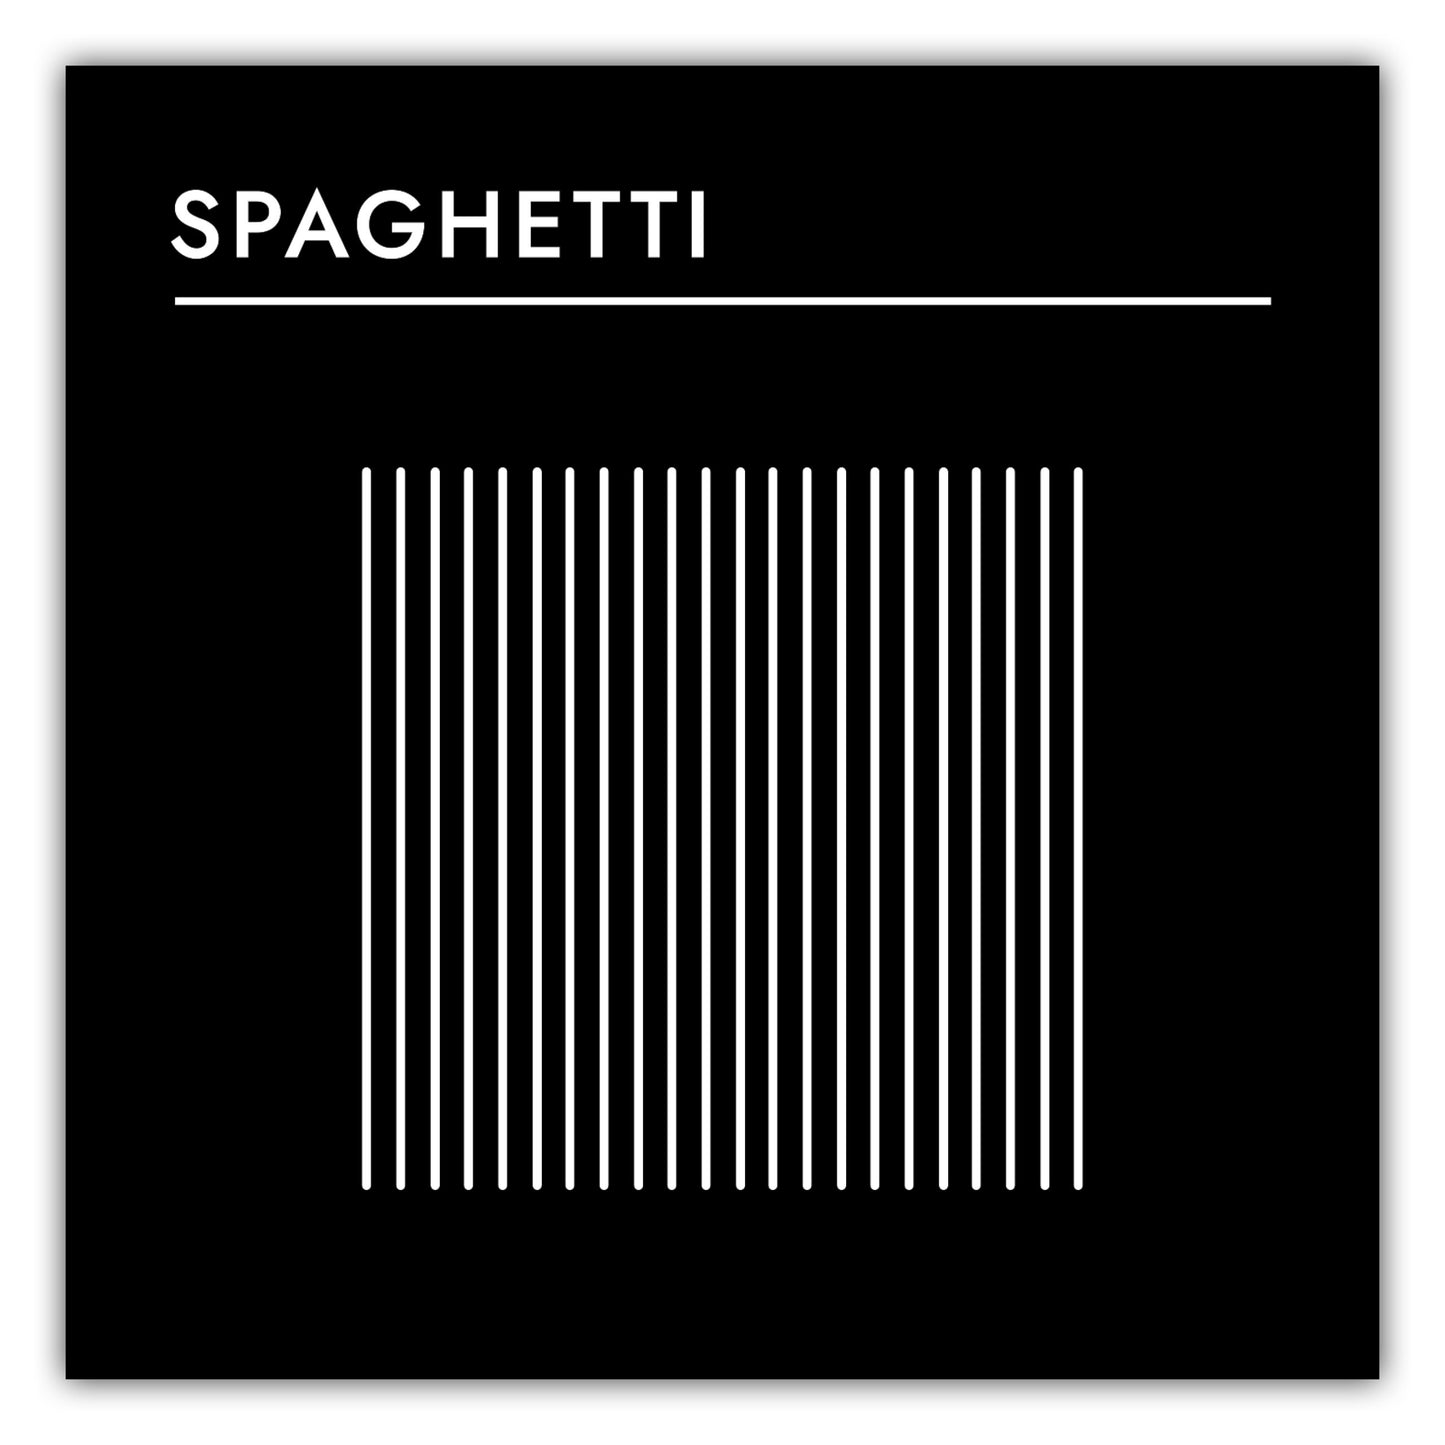 Poster Pasta - Spaghetti #2